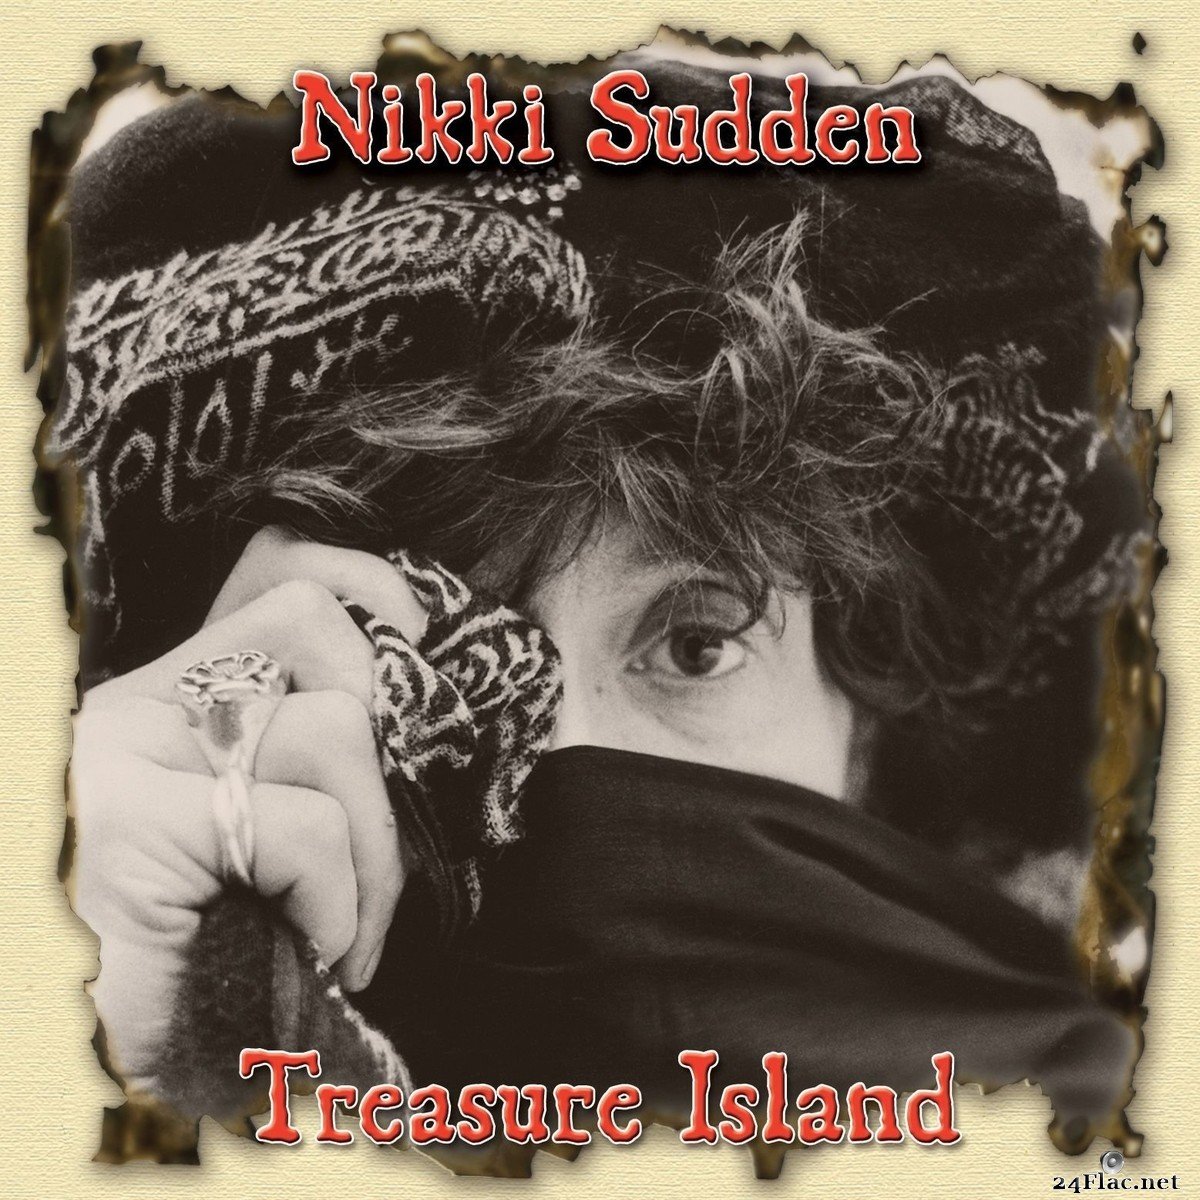 Nikki Sudden & The Last bandits - Treasure Island (Deluxe Version) (2021) FLAC